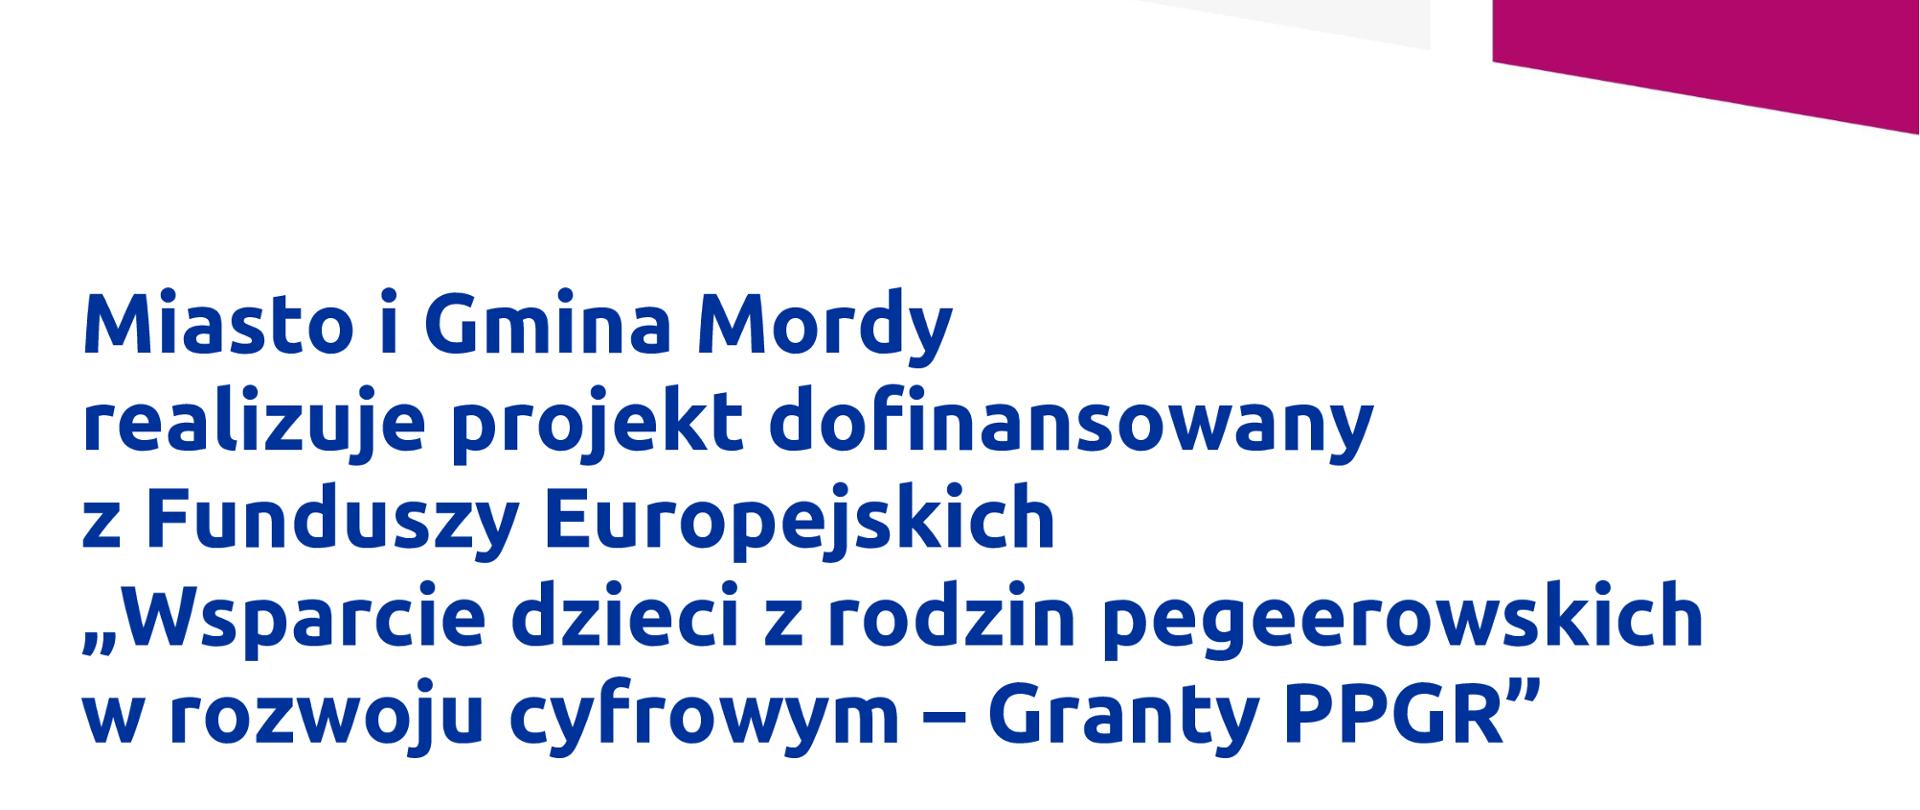 Miasto i Gmina Mordy realizuje projekt dofinansowany z Funduszy Europejskich "Wsparcie dzieci z rodzin pegeerowskich w rozwoju cyfrowym- Granty PPGR".
Celem projektu jest wsparcie rodzin popegeerowskich z dziećmi w zakresie dostępu do sprzętu komputerowego oraz dostępu do internetu." Dofinansowanie projektu z Unii Europejskiej to 105.500 złotych.